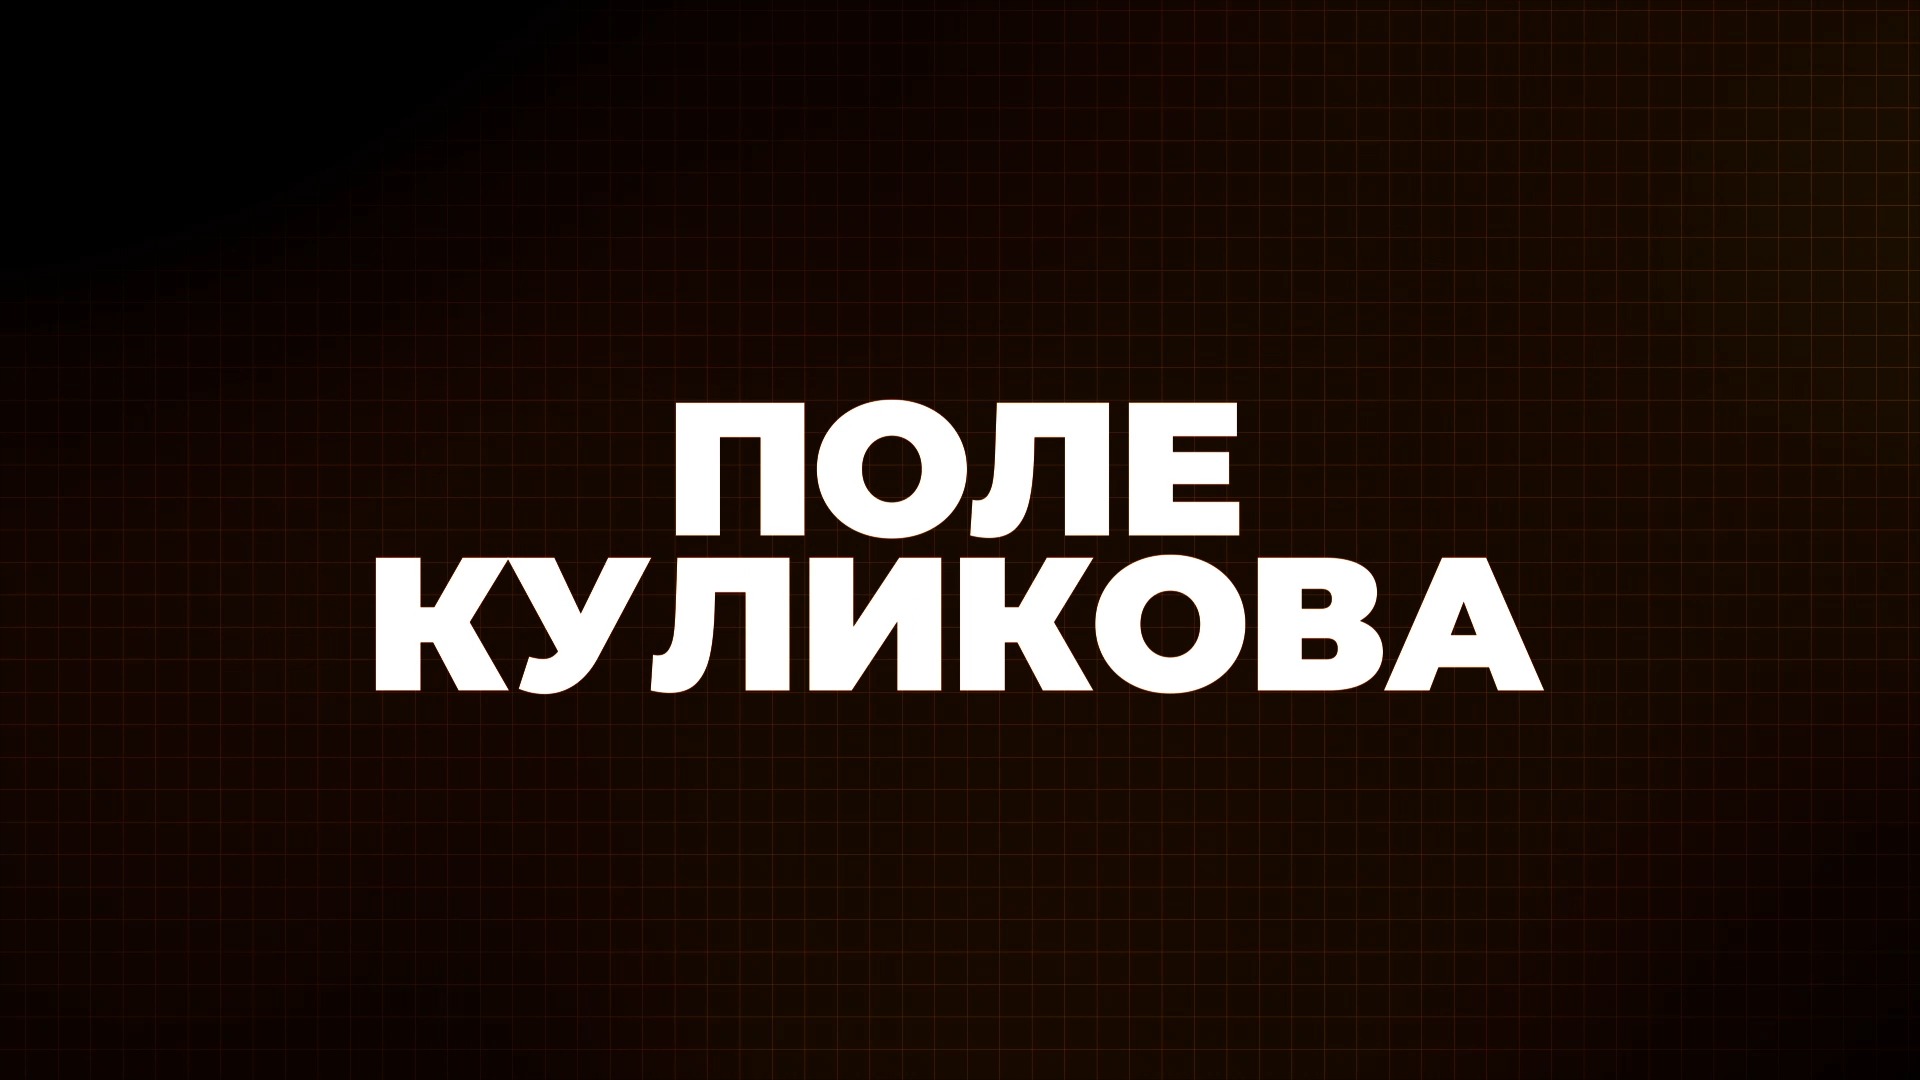 ⚡️Поле Куликова | Россия проводит спецоперацию на Украине | 13.04.22